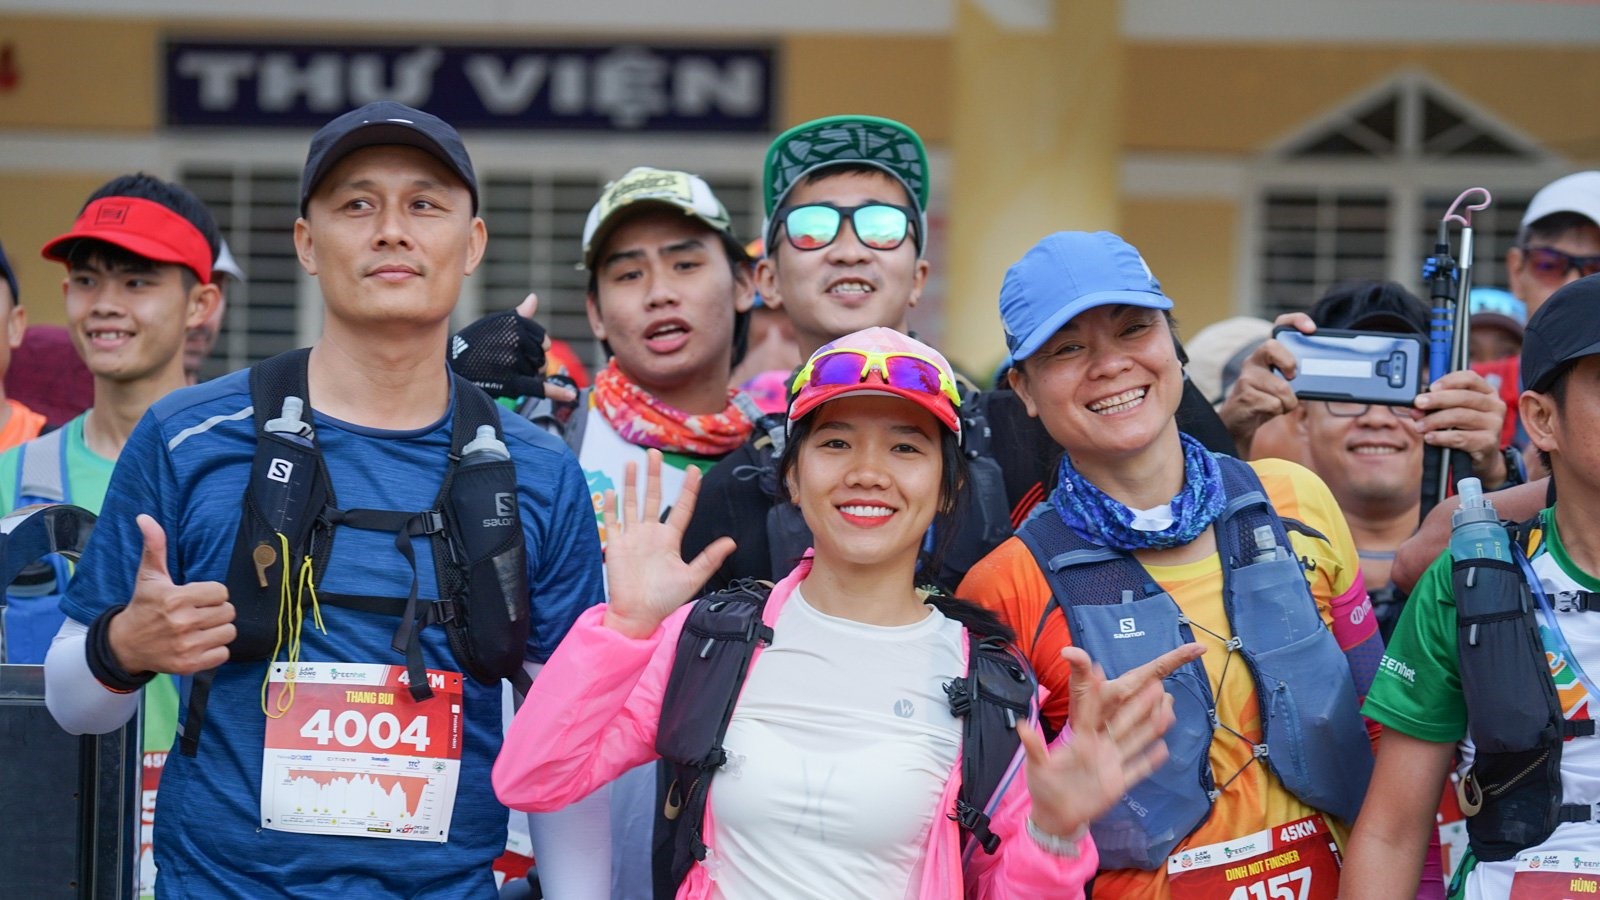 Ở cự ly đường trường 45km và 70 km, thu hút sự tham gia của nhiều chân chạy “khét tiếng:  Đỗ Trọng Nhơn - runner nổi tiếng trong làng chạy trail, hoàn thành thử thách “Run 100” trong 9 tiếng 02 giây; Tiểu Đường - nhà vô địch giải chạy VietNam Mountain Marathon 2022; Nhớ Hoài - vô địch Việt Nam Trail Marathon 2022;